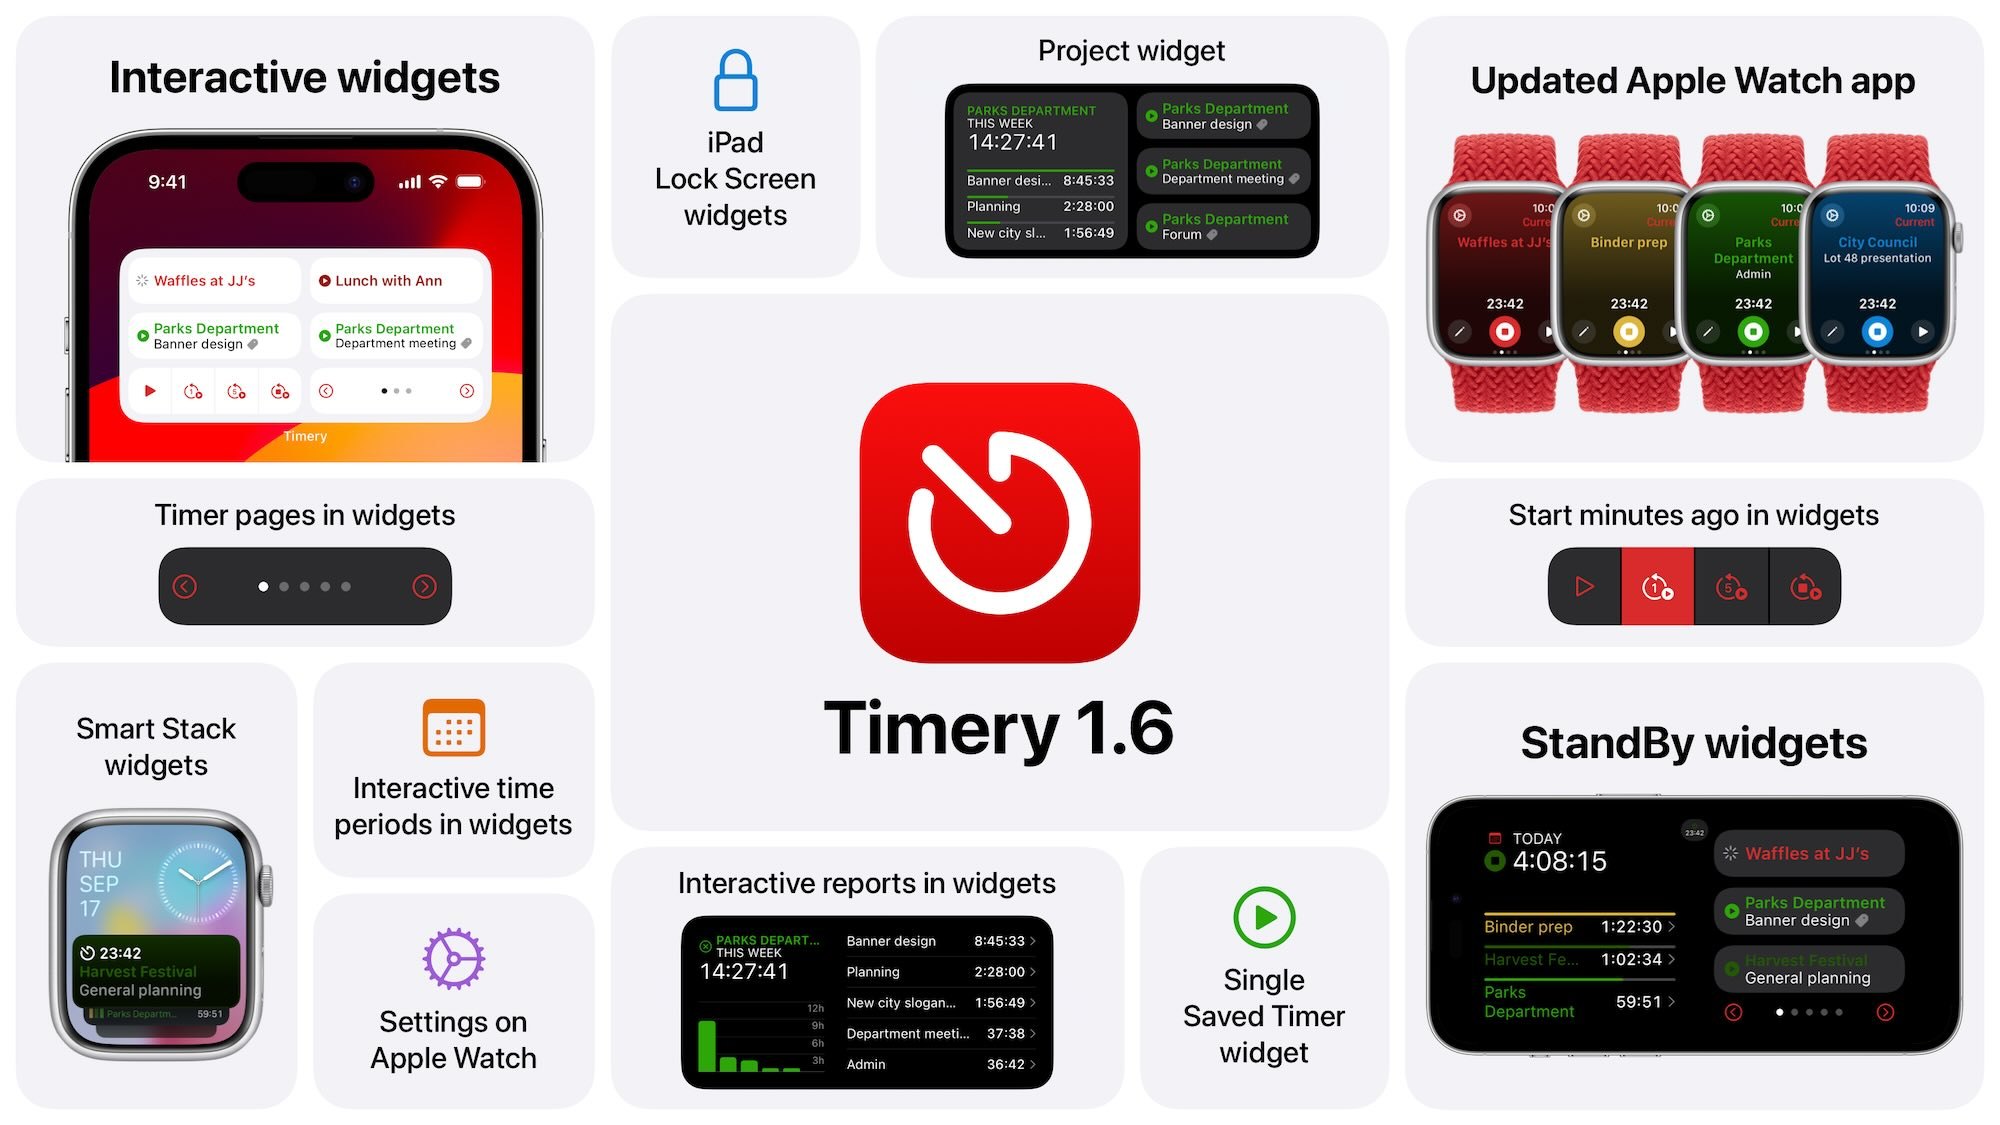 Najlepsze aplikacje na iOS 17 z interaktywnymi widżetami i StandBy gry-i-aplikacje, ciekawostki, box Widgetsmith, Timery, Things 3, StandBy, Rise Sleep, Overcast, iPhone, iPad, iOS 17, interaktywne widżety, Flighty, Dark Noise, Carrot Weather, App Store, aplikacje z interaktywnymi widgetami na iOS 17, Aplikacje  iOS 17 z pewnością przyniósł wiele nowości i ulepszeń, a jednym z najważniejszych jest znacznie większa funkcjonalność widżetów na ekranie głównym. image